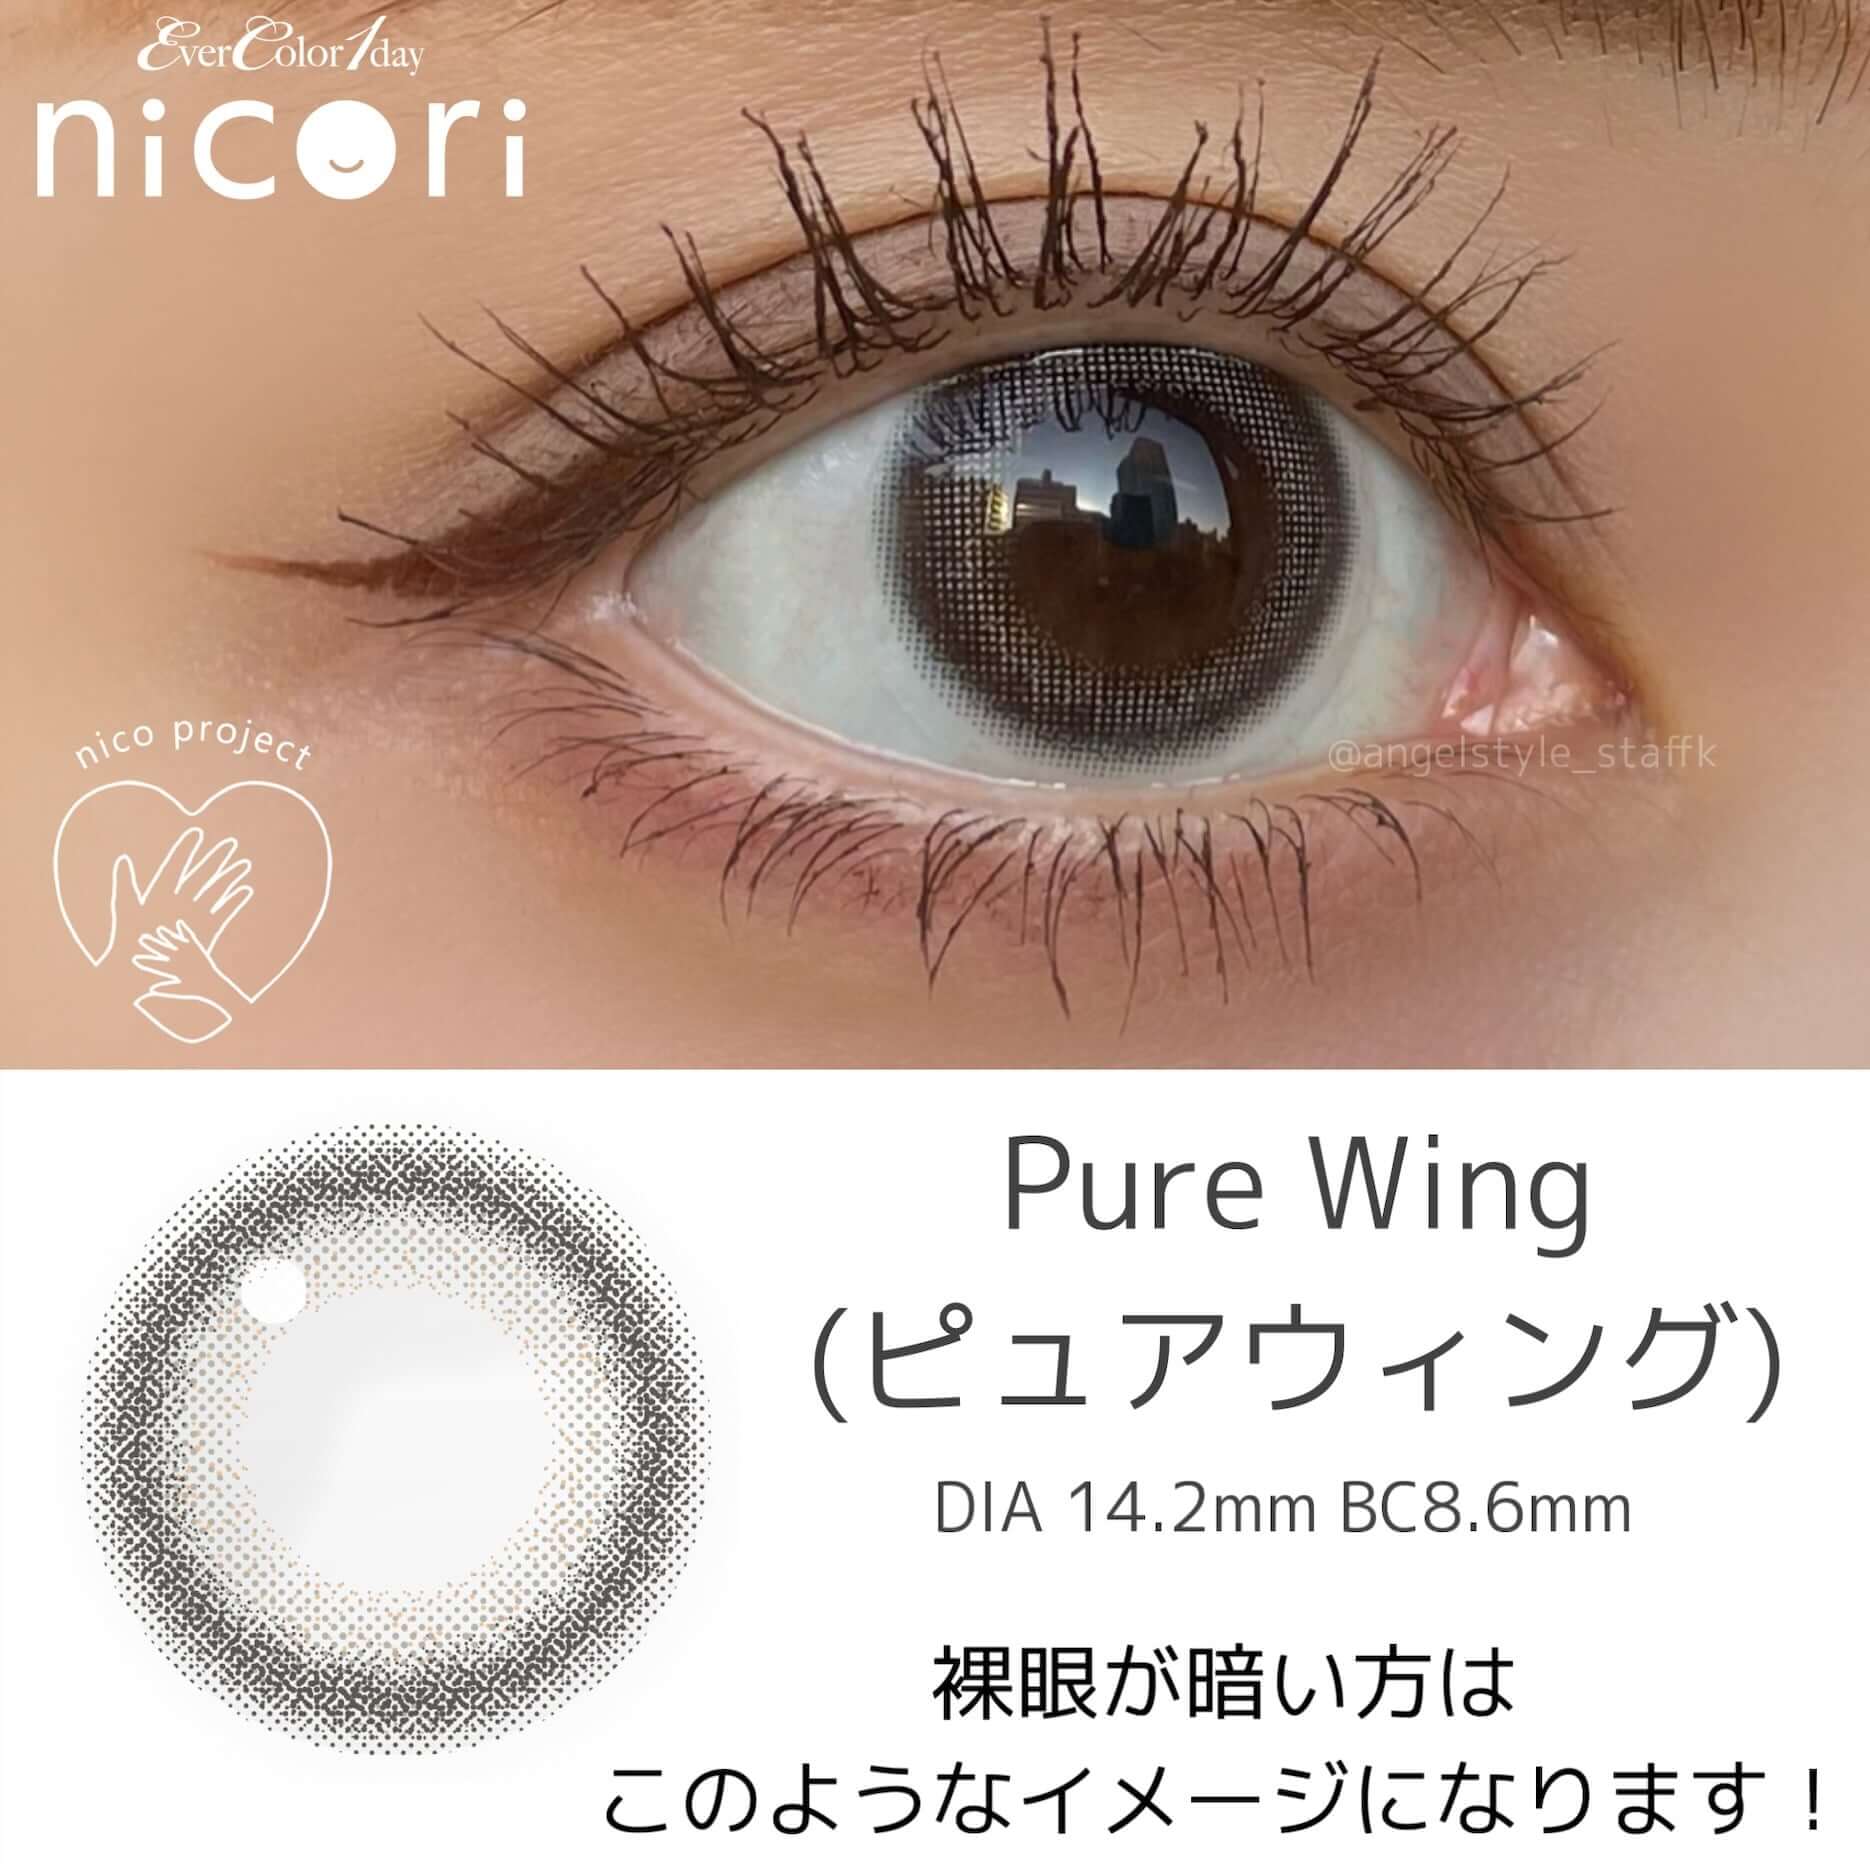 キンキ カラコンのエバーカラー ワンデー ニコリ（nicori）のピュアウィングはDIA14.2mm、BC8.6mmのきゅるんと透明感グレー。